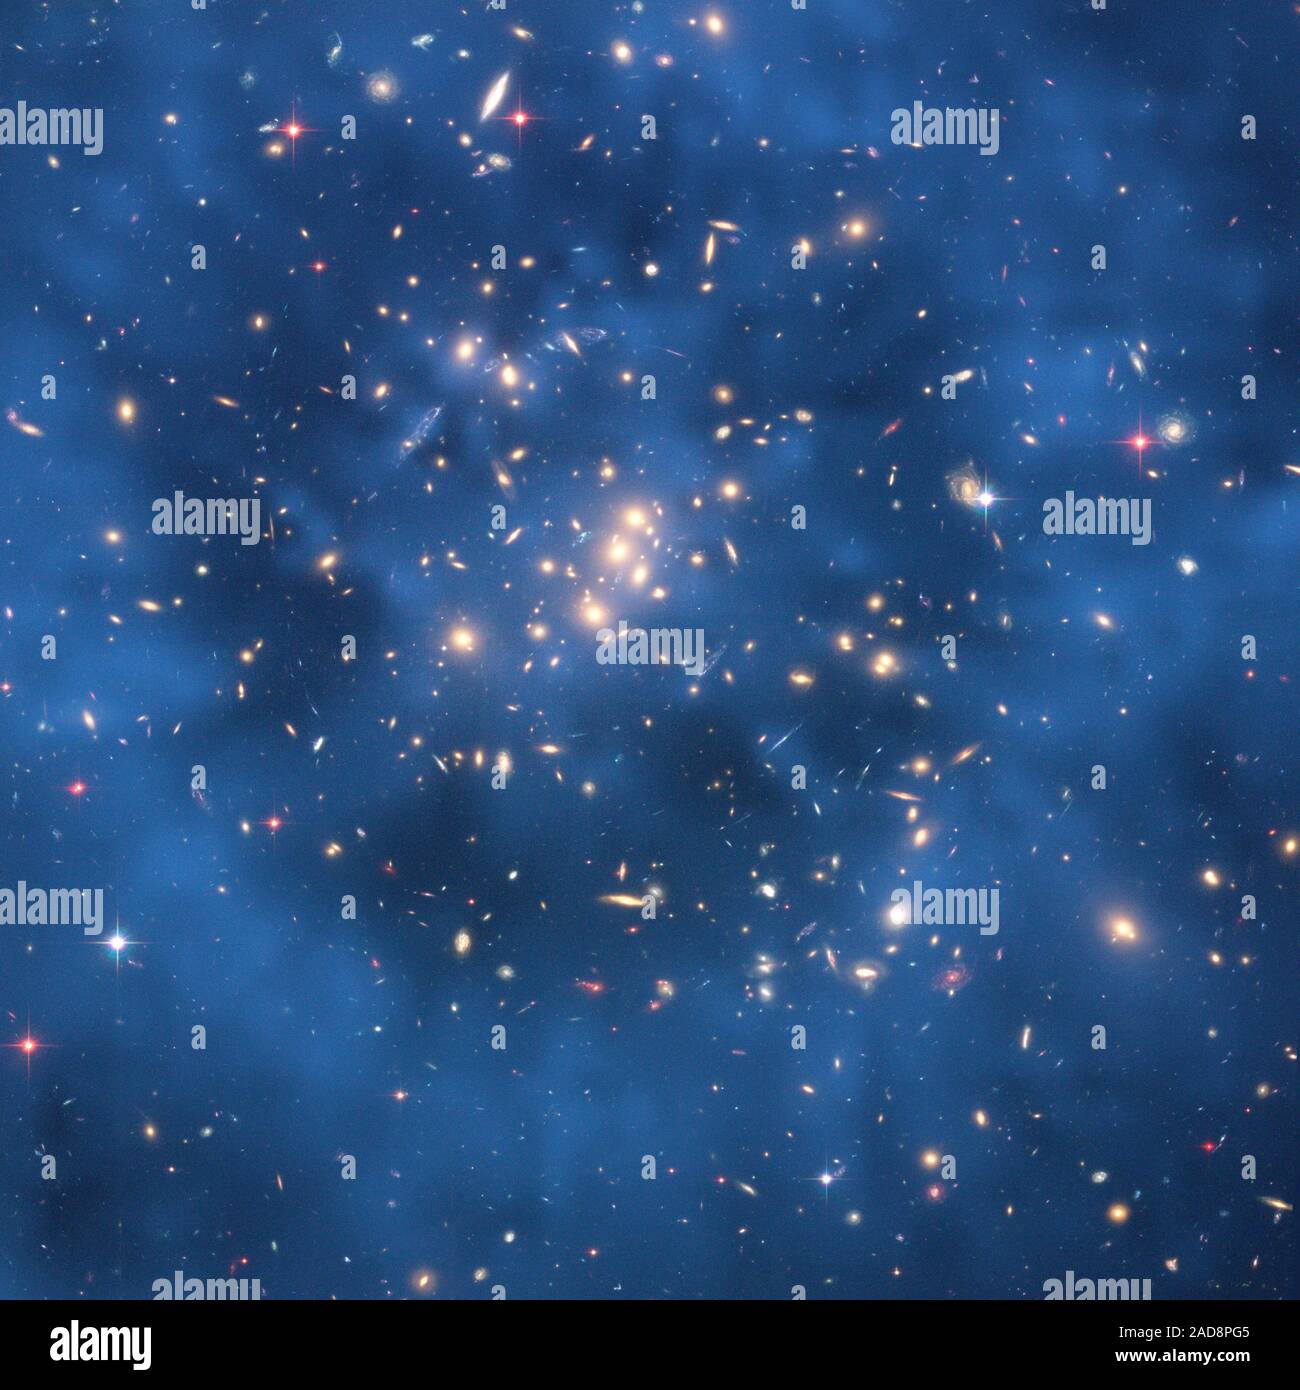 Questo telescopio spaziale Hubble immagine composita mostra uno spettrale 'Ring' di materia oscura in galaxy cluster Cl 0024+17. La struttura ad anello è evidente nella mappa blu del cluster di materia oscura la distribuzione. La mappa è sovrapposta ad una immagine di Hubble del cluster. L'anello è uno dei più forti dei pezzi di prova alla data per l'esistenza di materia oscura, una sostanza sconosciuta che pervade l'universo. La mappa è stata derivata da osservazioni di Hubble di come la gravità del cluster Cl 0024+17 distorce la luce di più distanti galassie, un'illusione ottica chiamato Lensing gravitazionale. Foto Stock